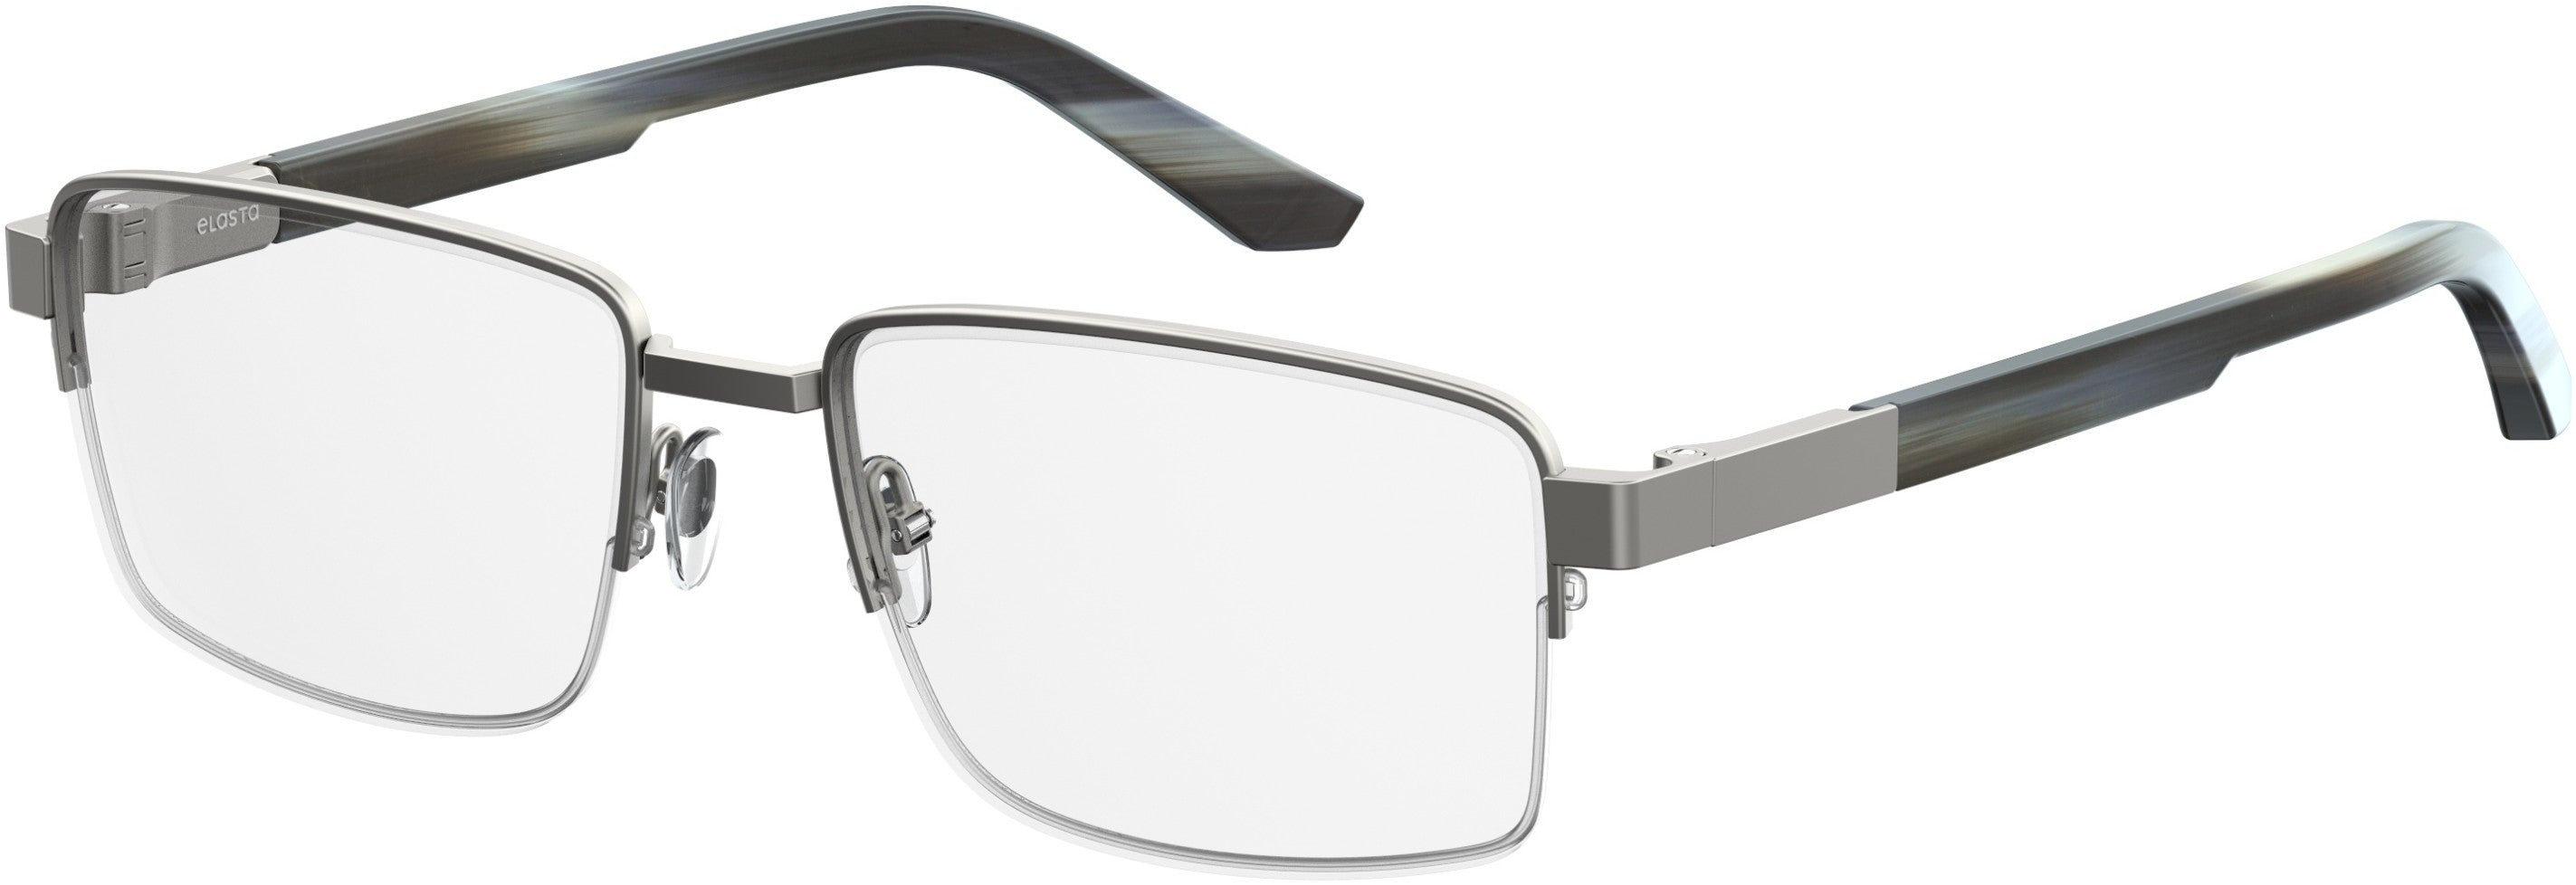  Elasta 3116 Rectangular Eyeglasses 015H-015H  Dark Ruthenium Striped Gray (00 Demo Lens)